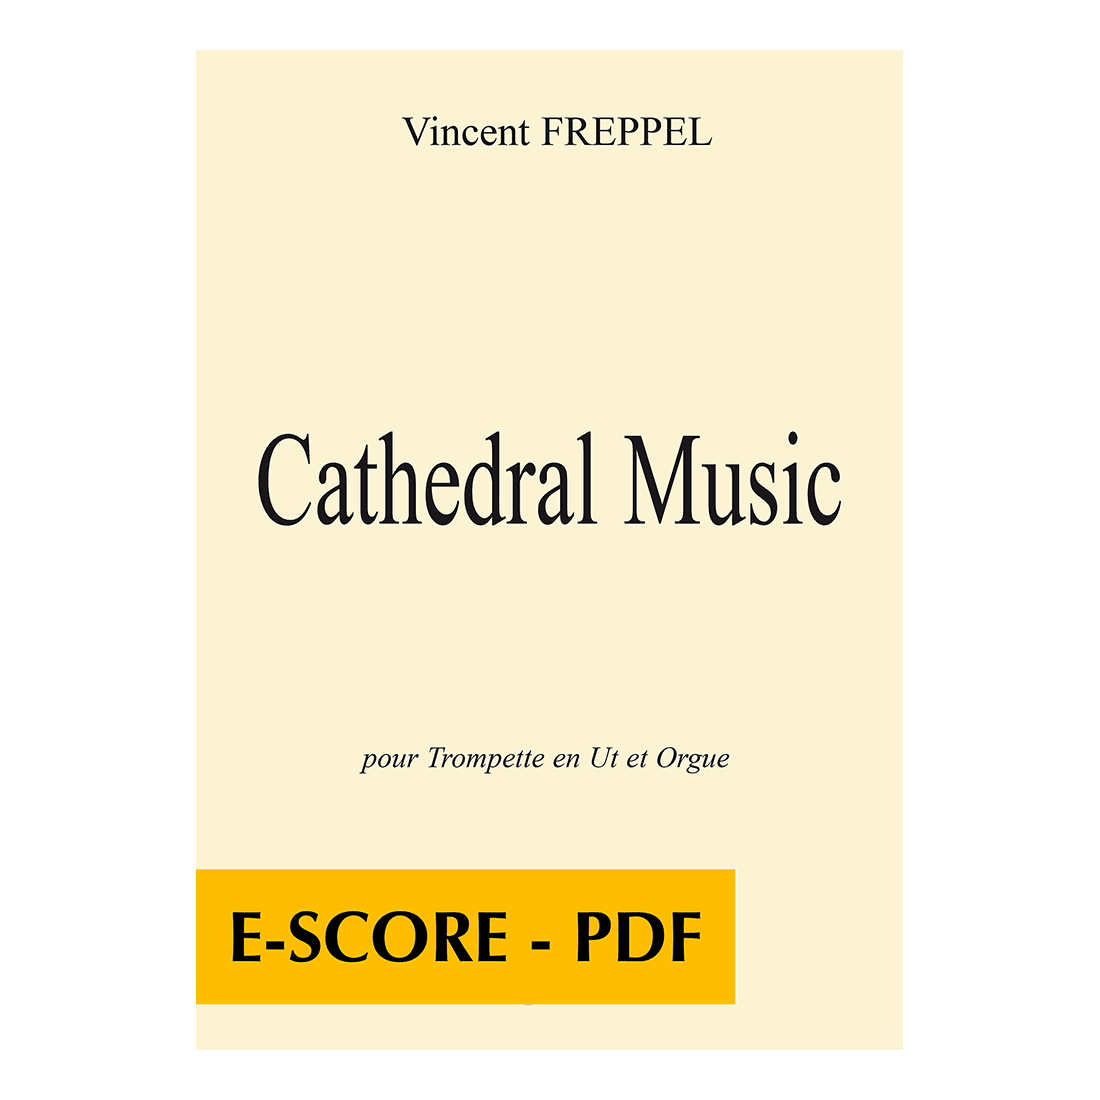 Cathedral Music pour trompette en ut et orgue - E-score PDF